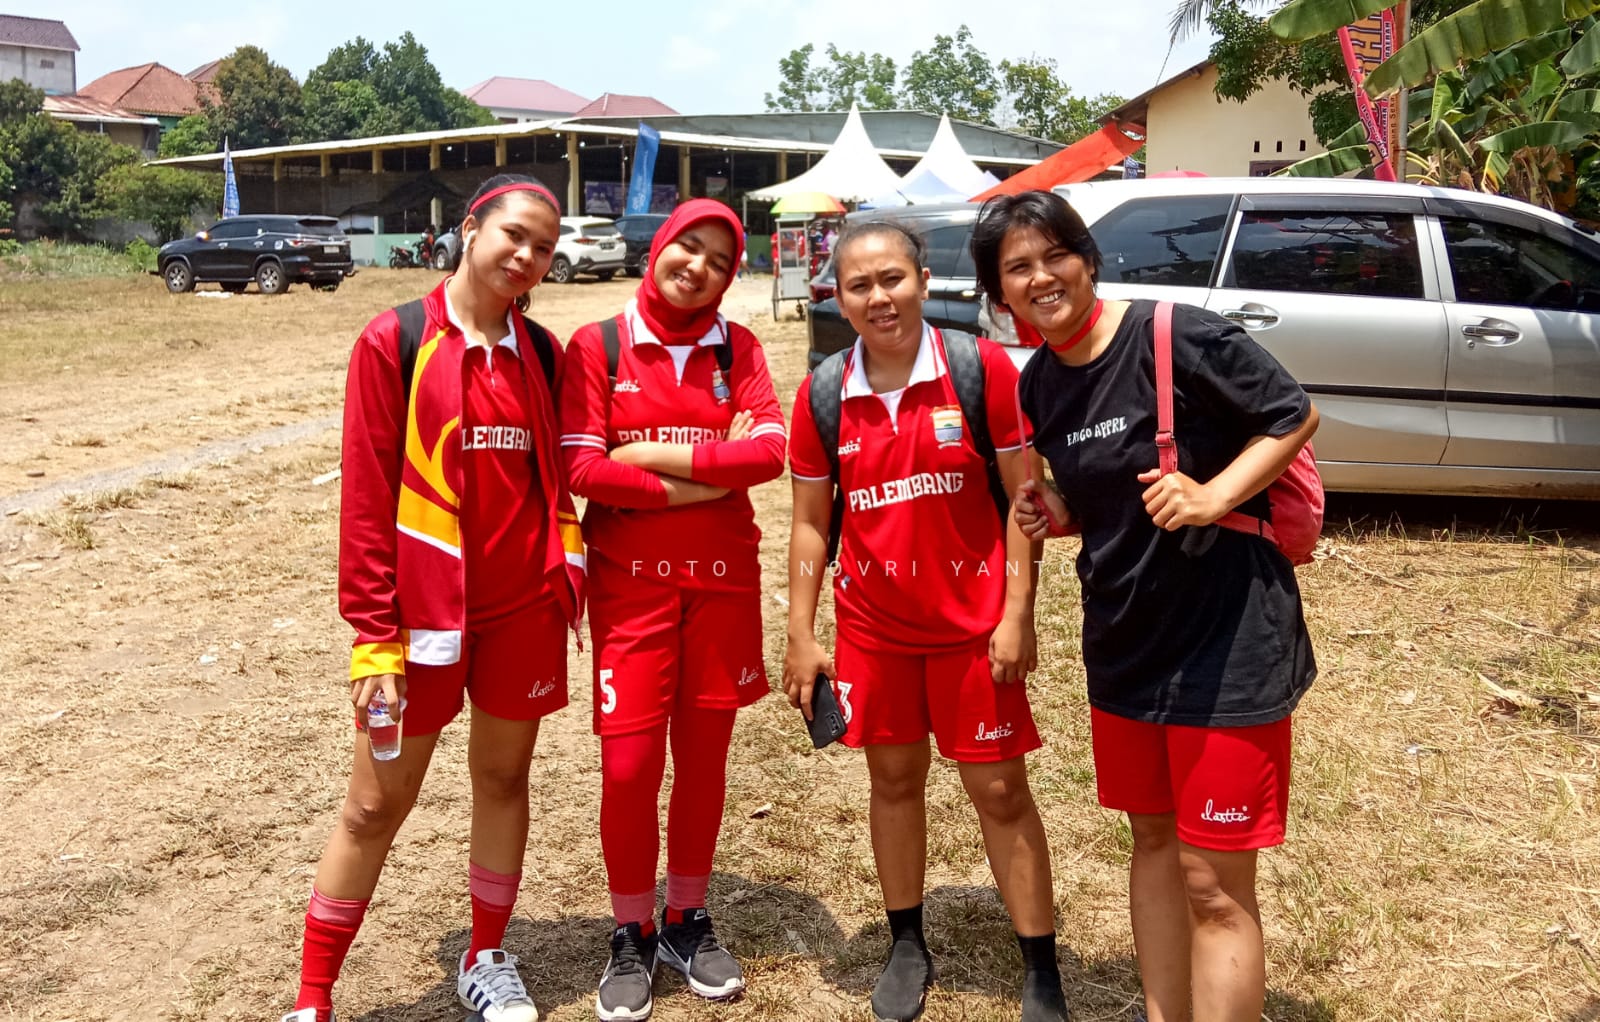 Ketemu Lahat di Laga Final, ini Kesiapan Tim Futsal Putri kota Palembang Yang siap Main Maksimal